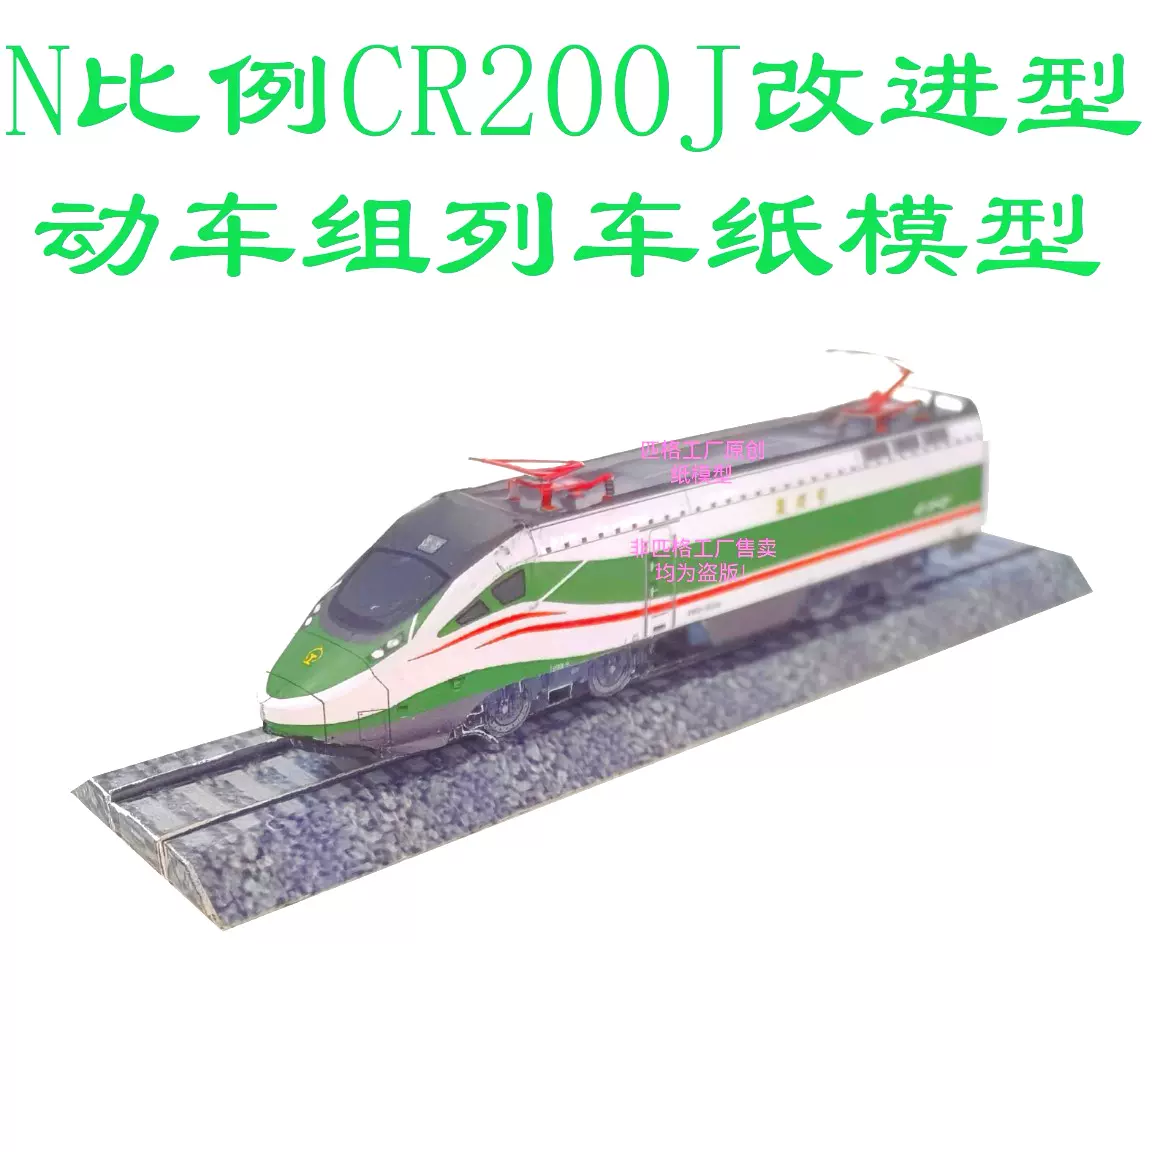 匹格N比例绿巨人成昆CR200J动车模型3D纸模DIY火车高铁动车模型-Taobao